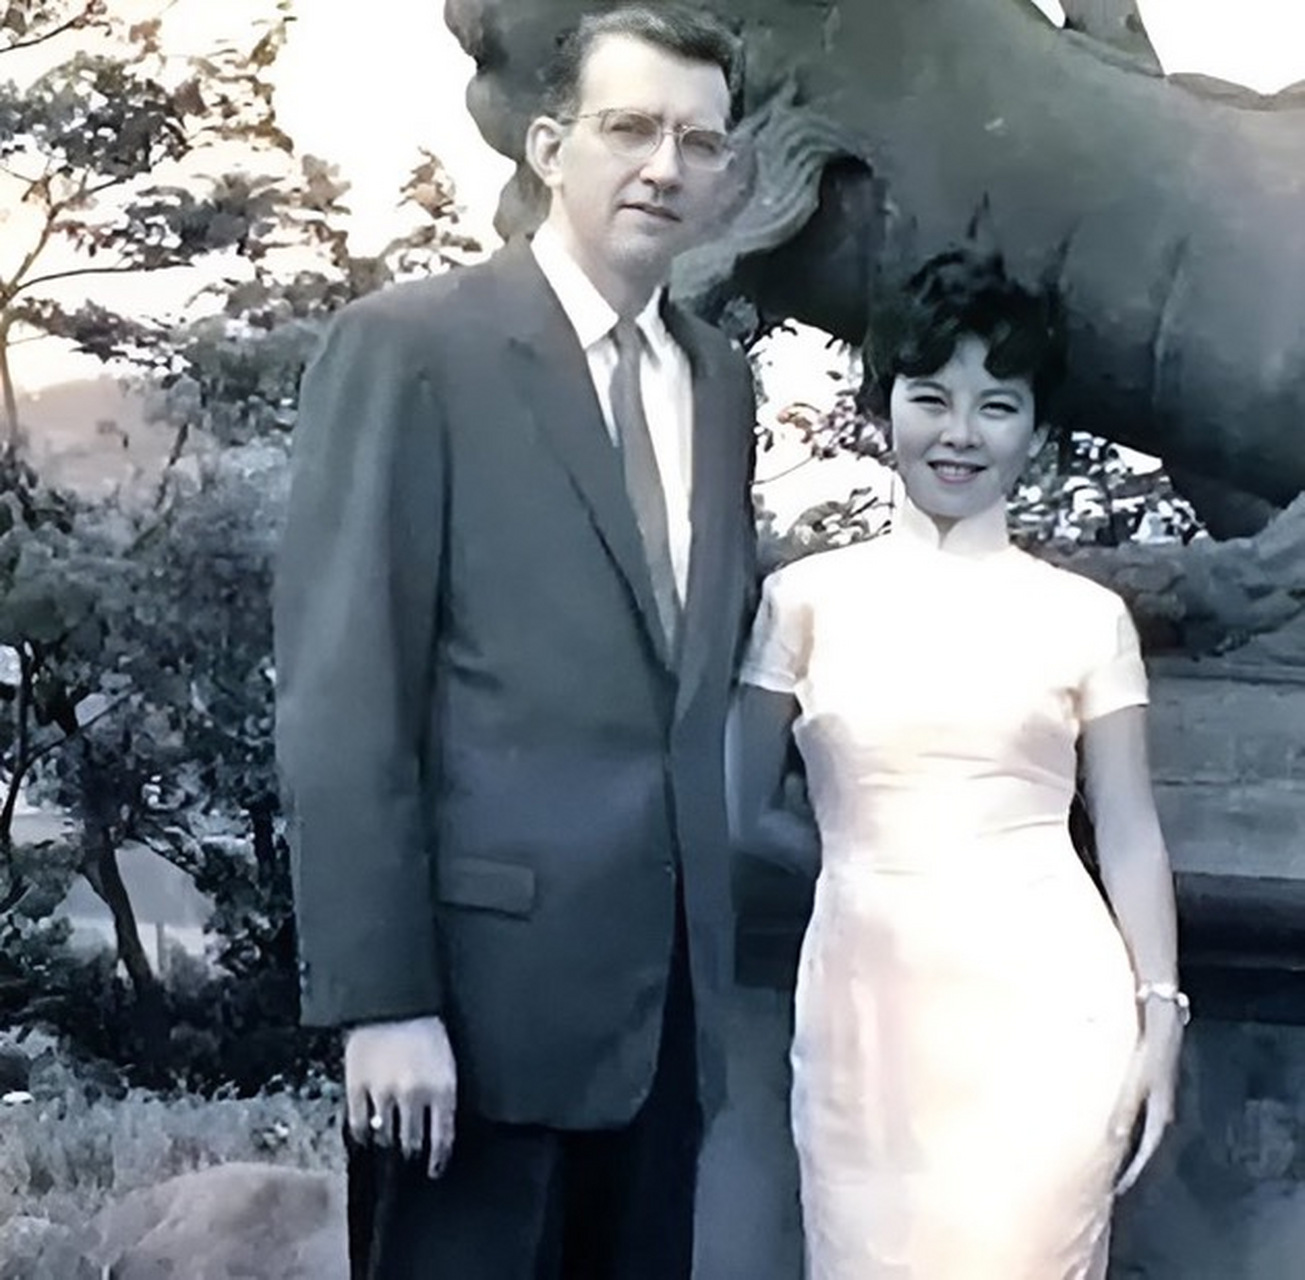 费翔的父母费伟德与毕丽娜,毕丽娜祖籍莱州,(1932)出生于伪满洲国滨江